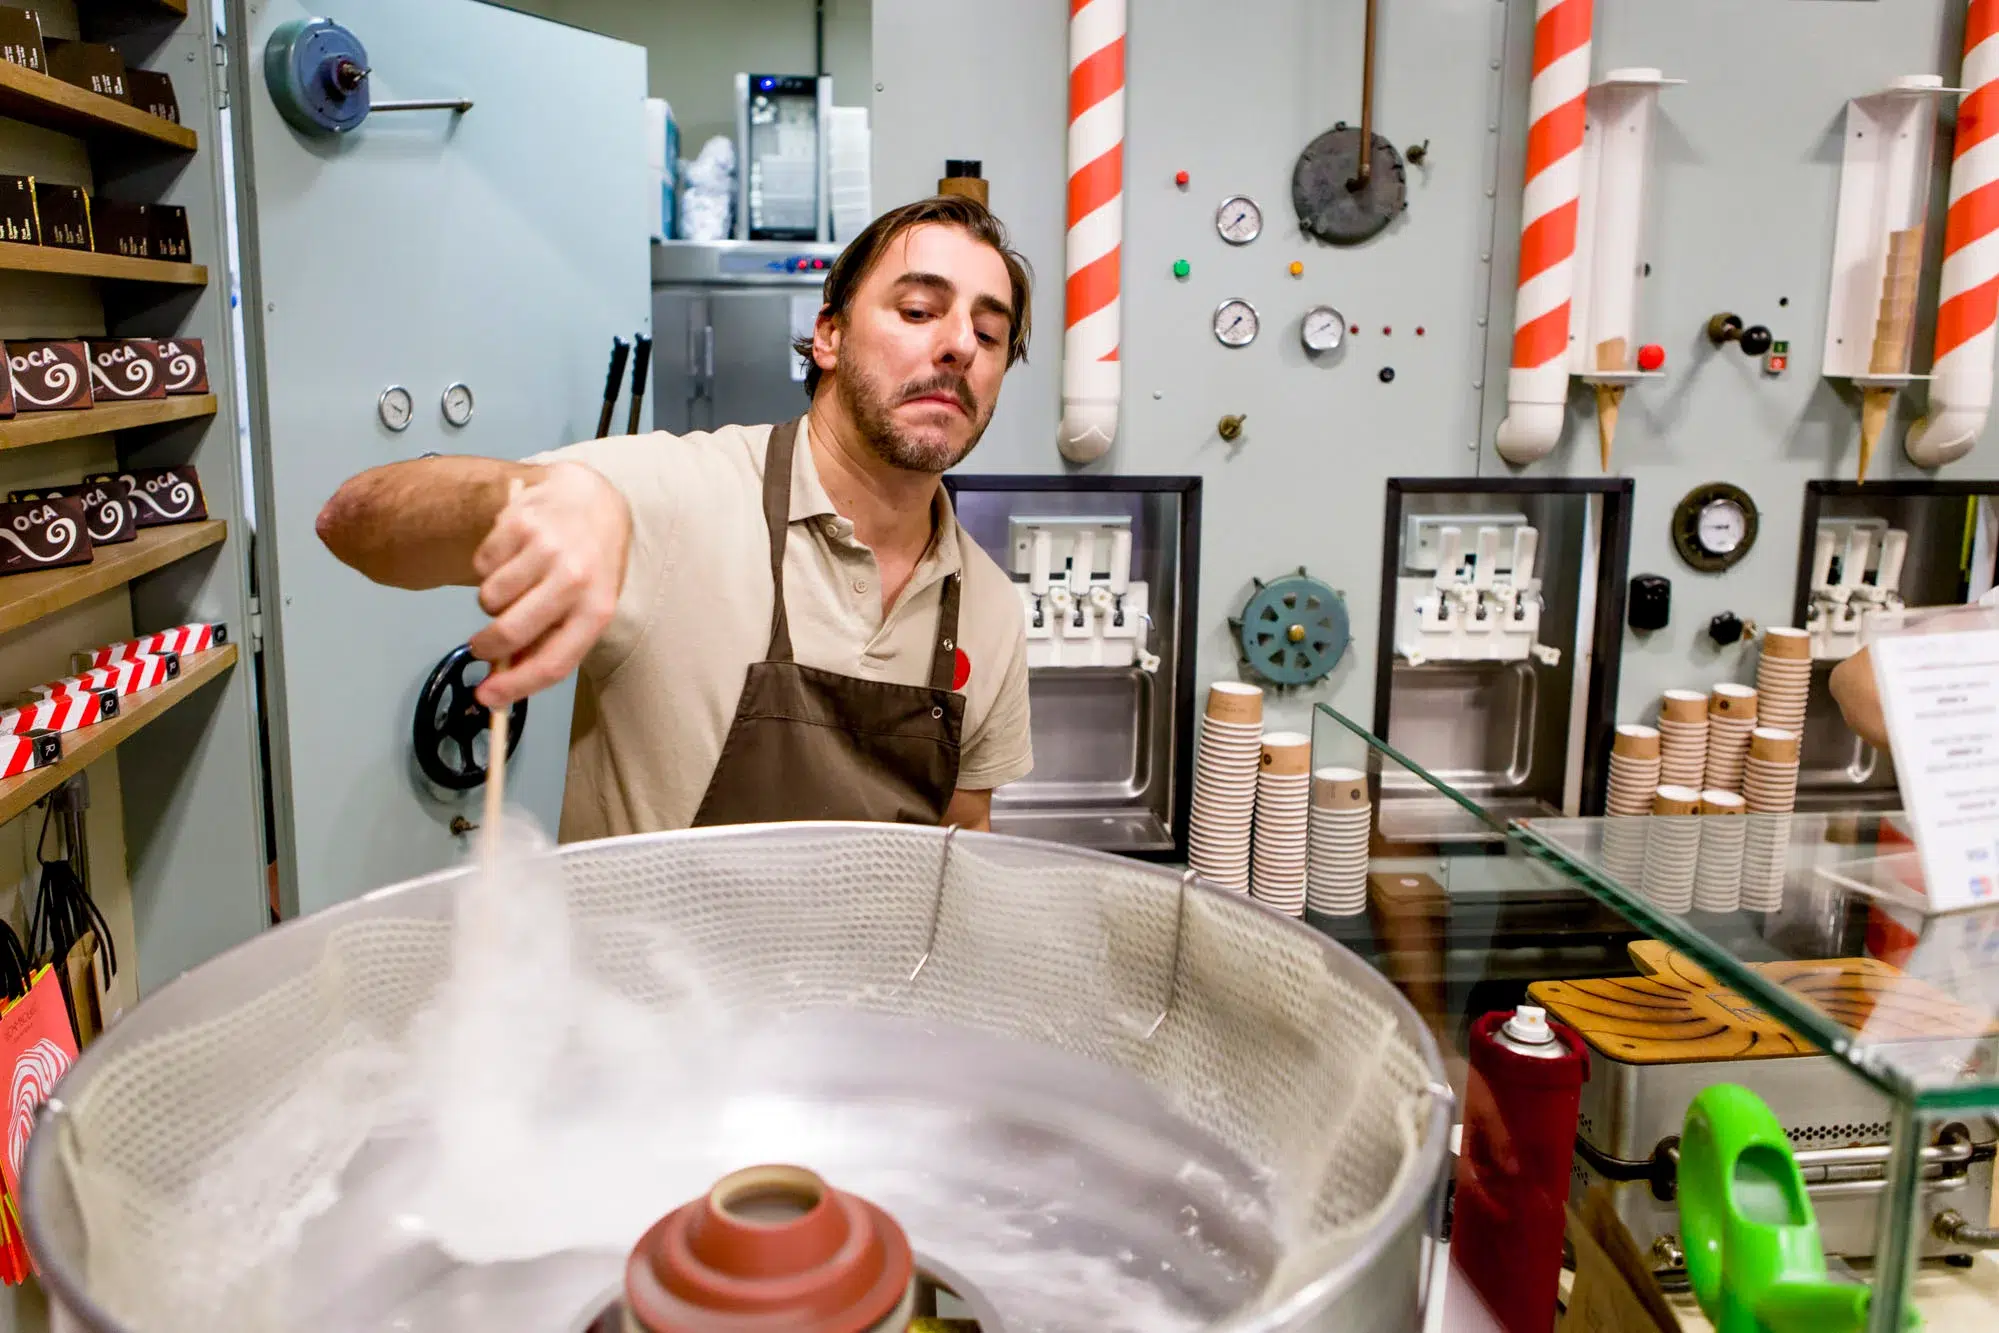 Rocambolesc es una heladería que ofrece sabores de turrón artesanal que nunca has visto en Madrid